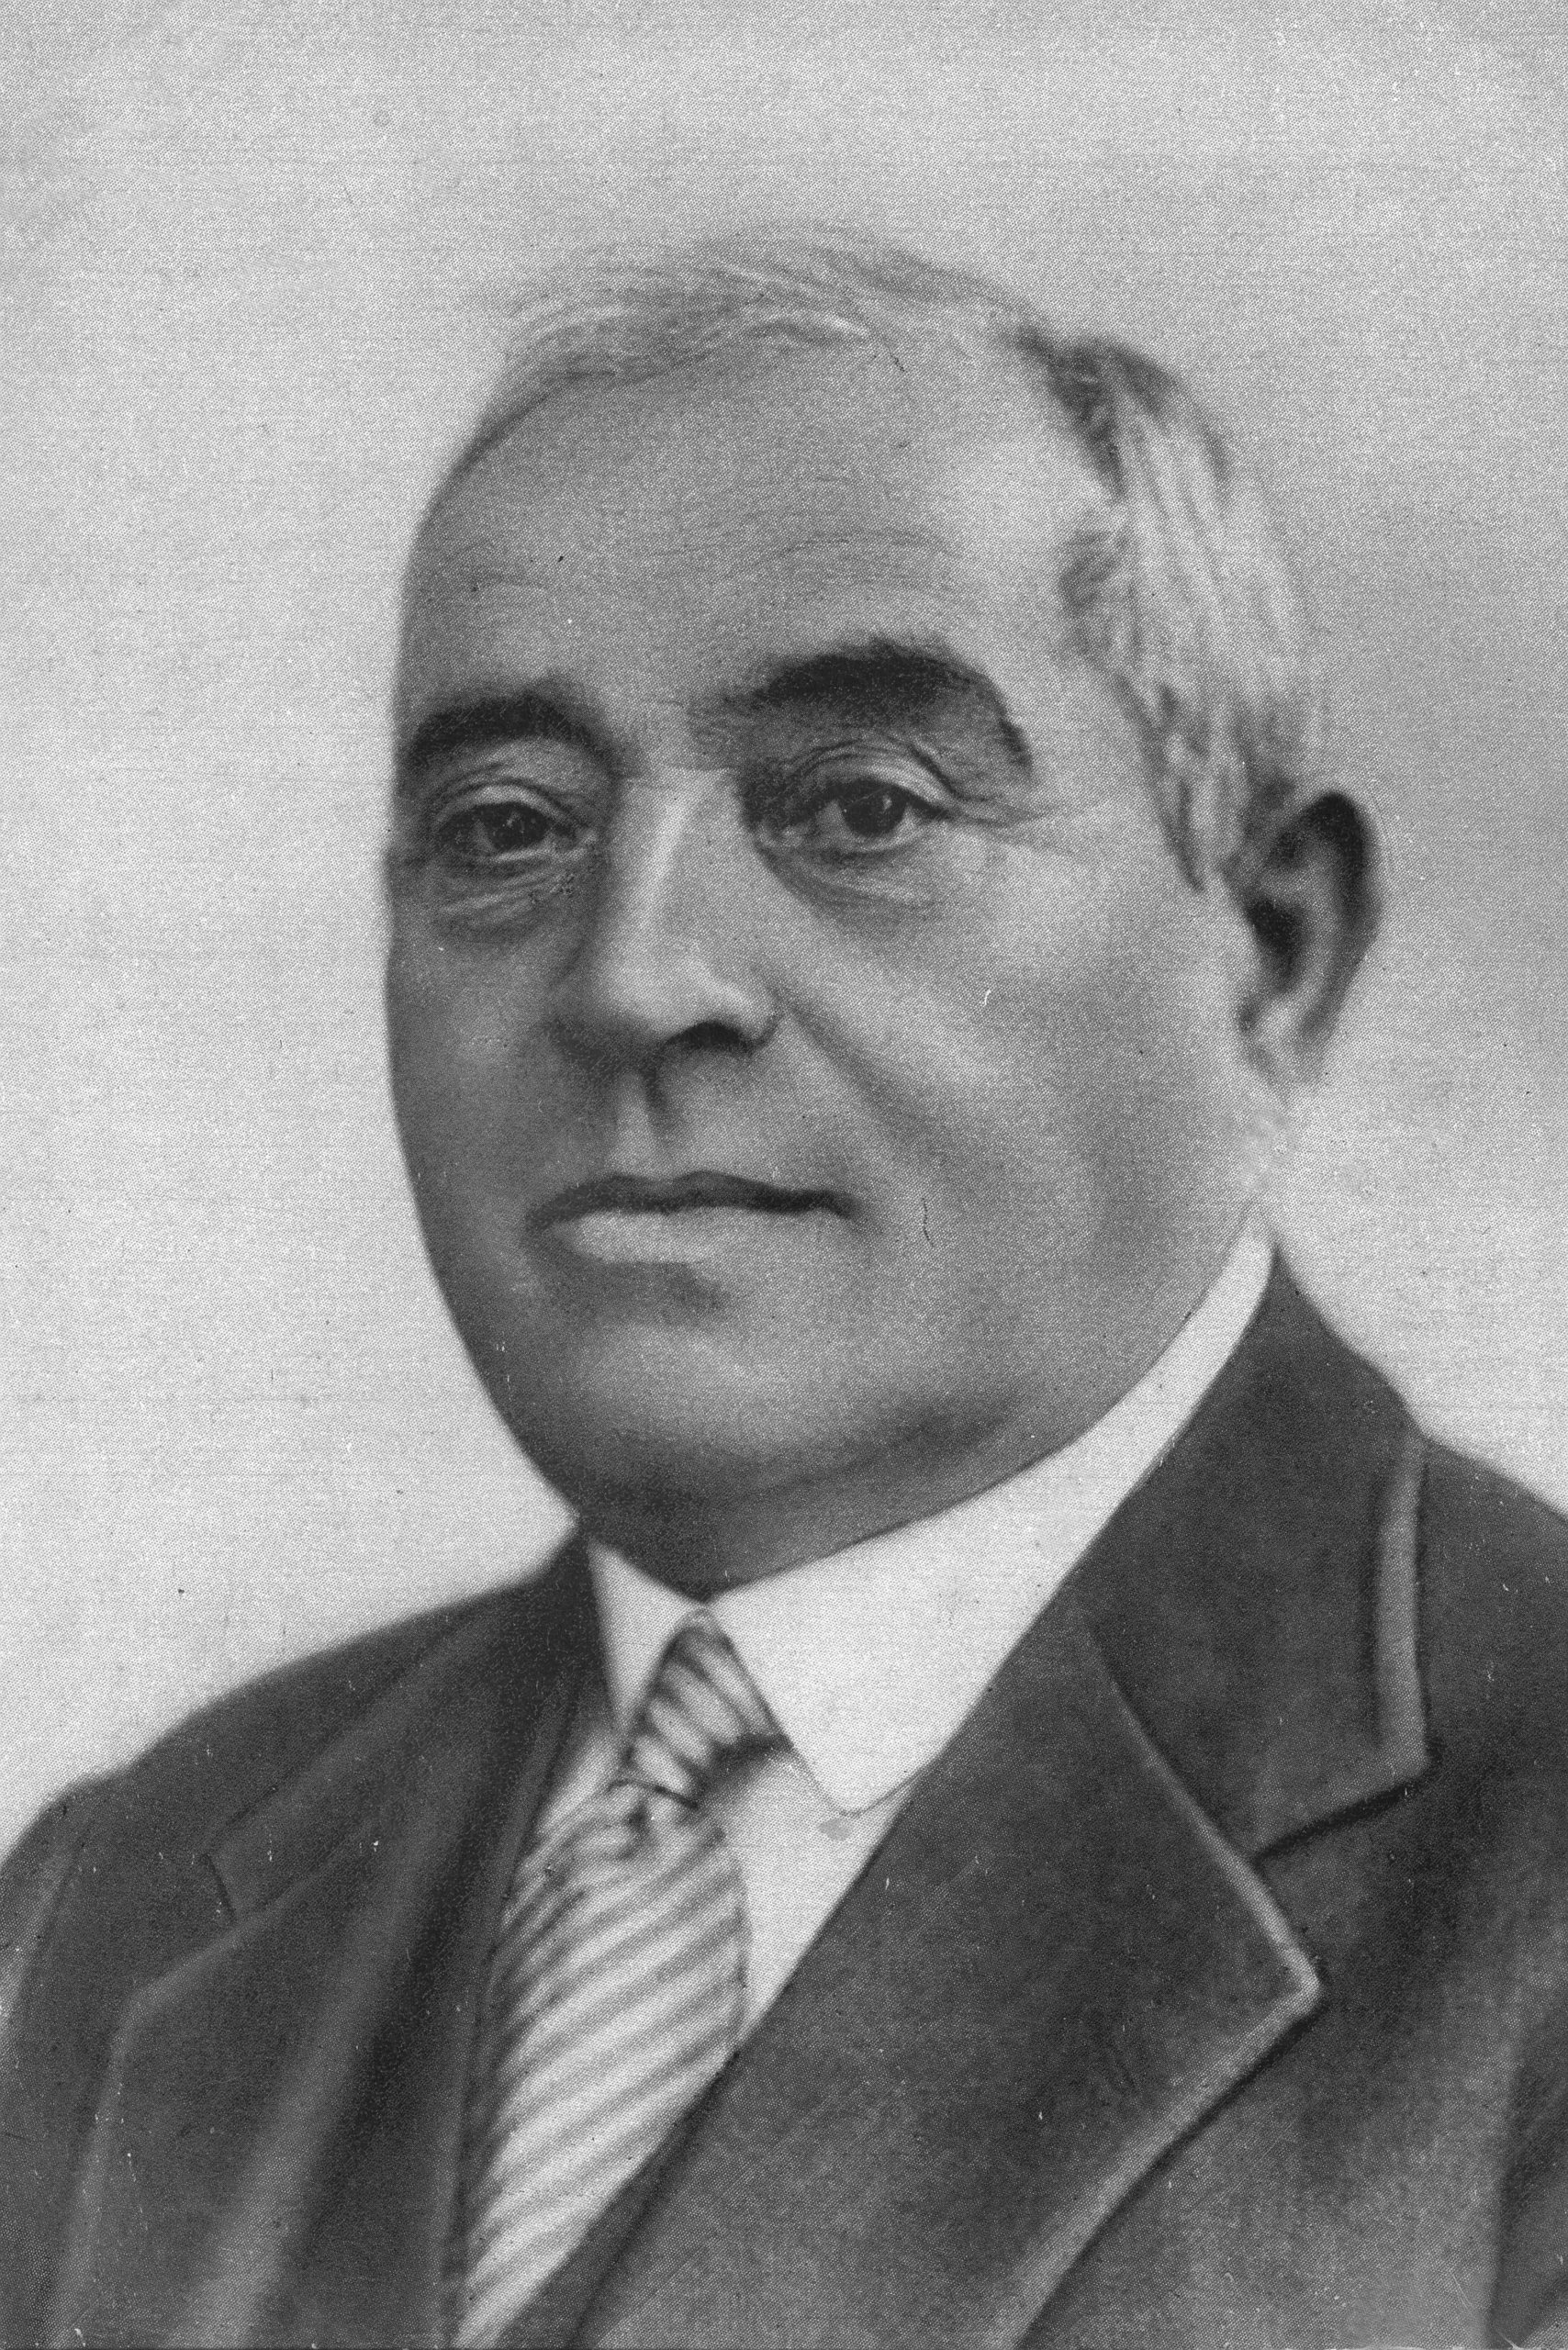 Meir Dizengoff, 1861-1936